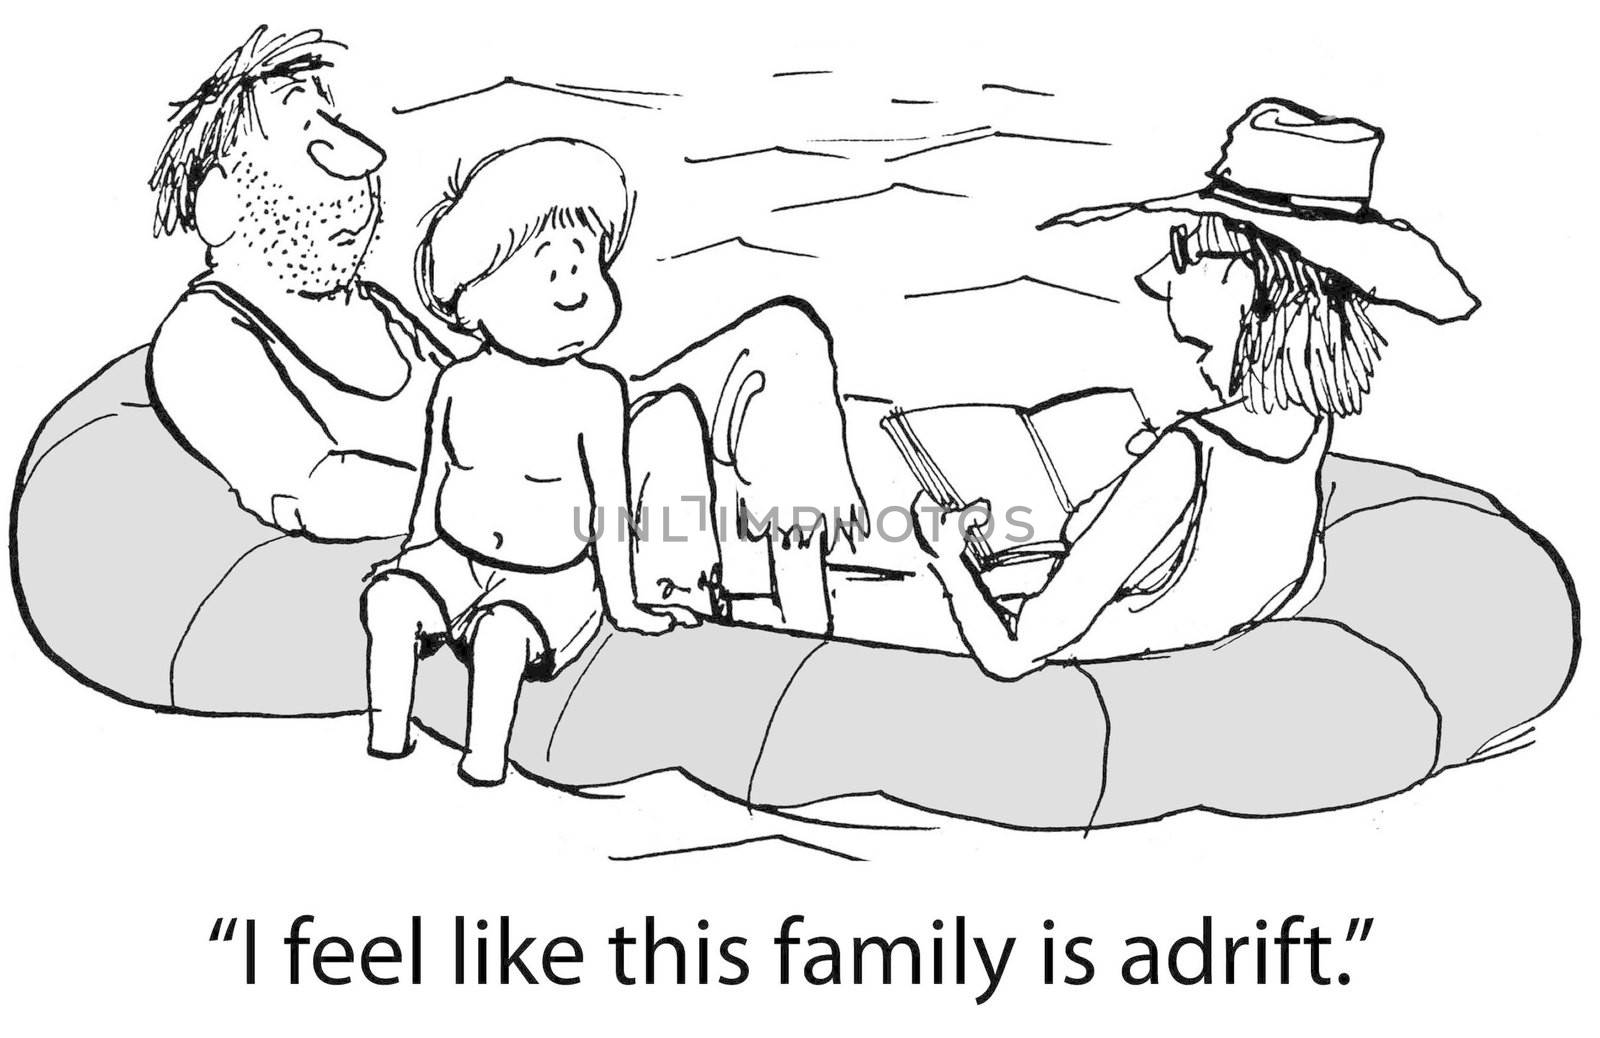 "I feel like this family is adrift."